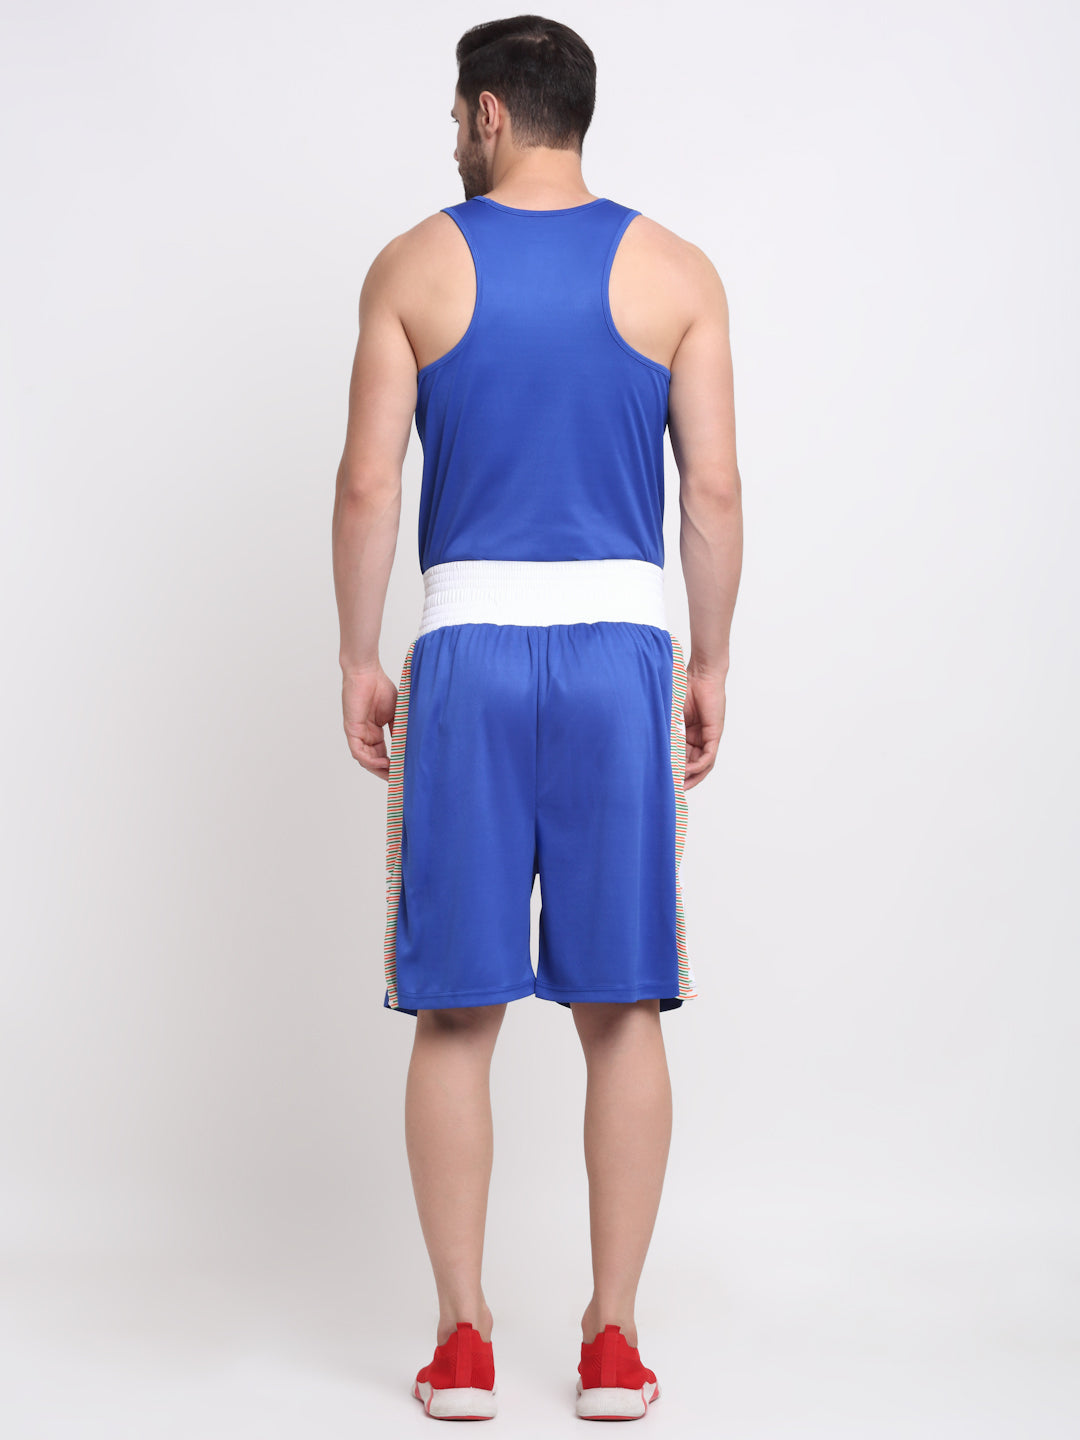 Invincible Men's Competition Boxing Set - Boxing Uniform Short & Vest Set Light Weight Sports Dress Boxing Suit